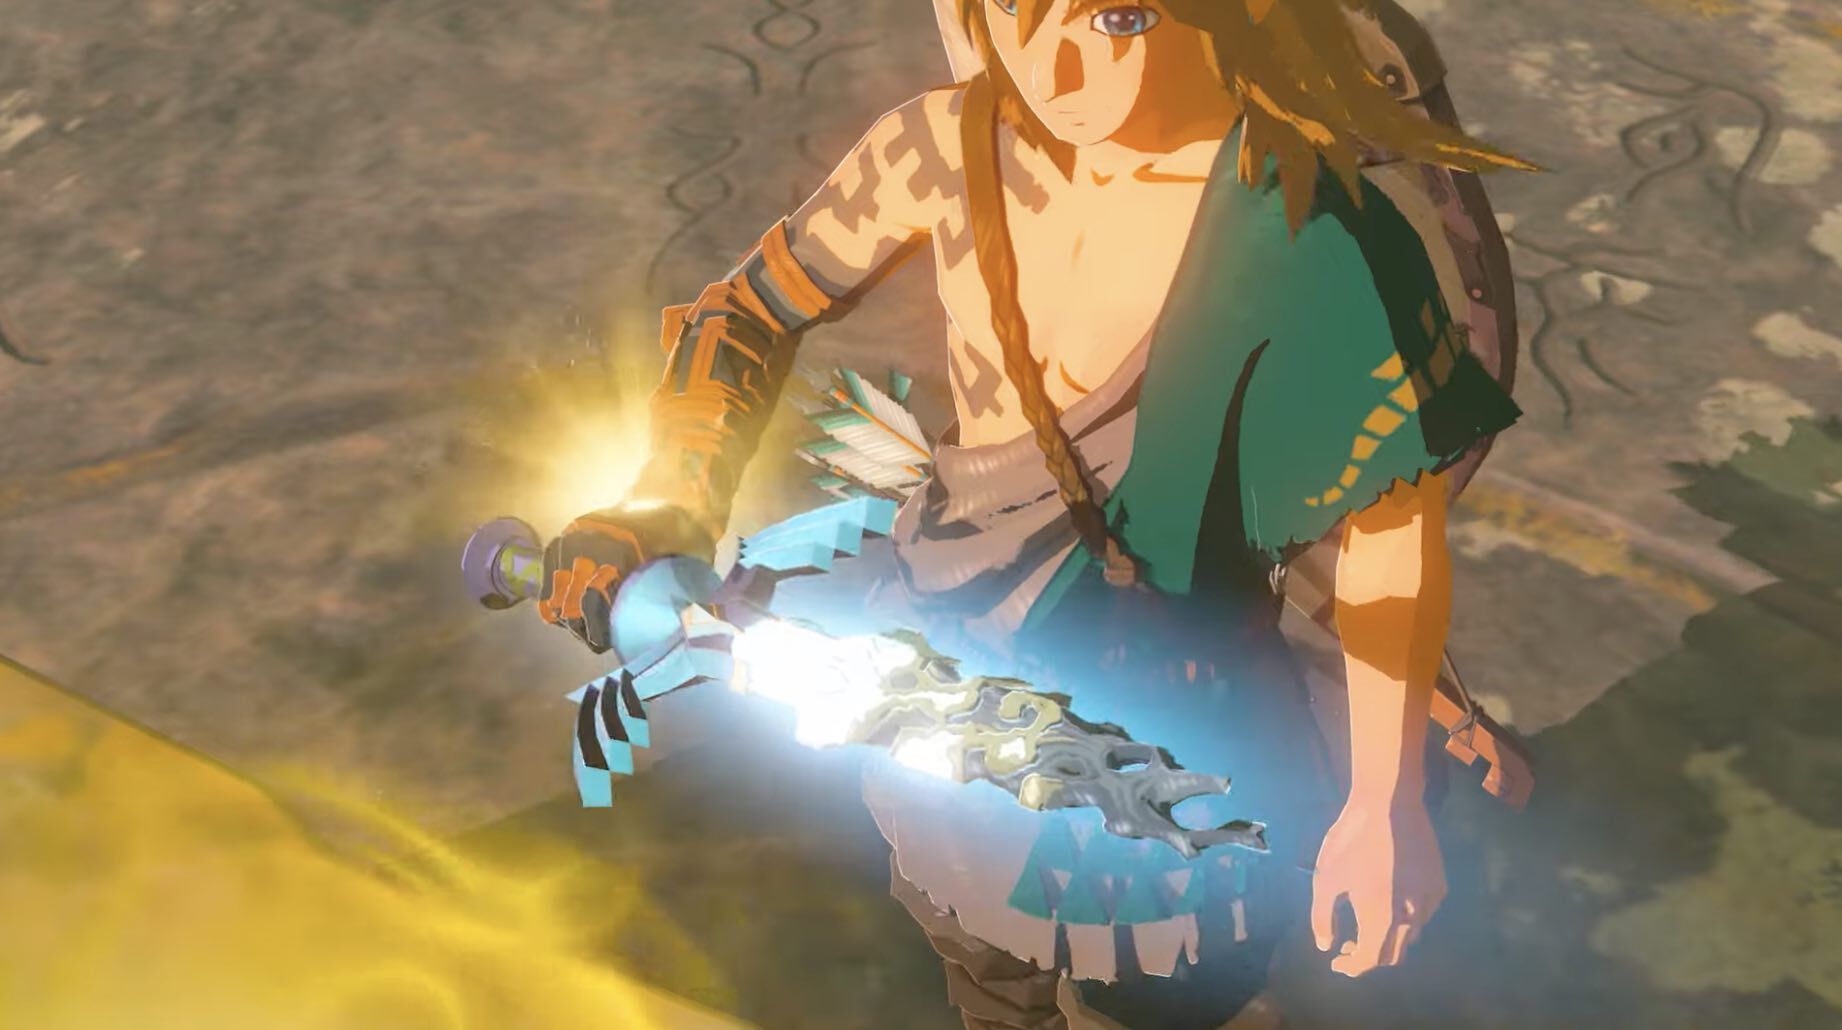 Zelda Breath of the Wild 2 RELEASE DATE LEAK Just Dropped! 